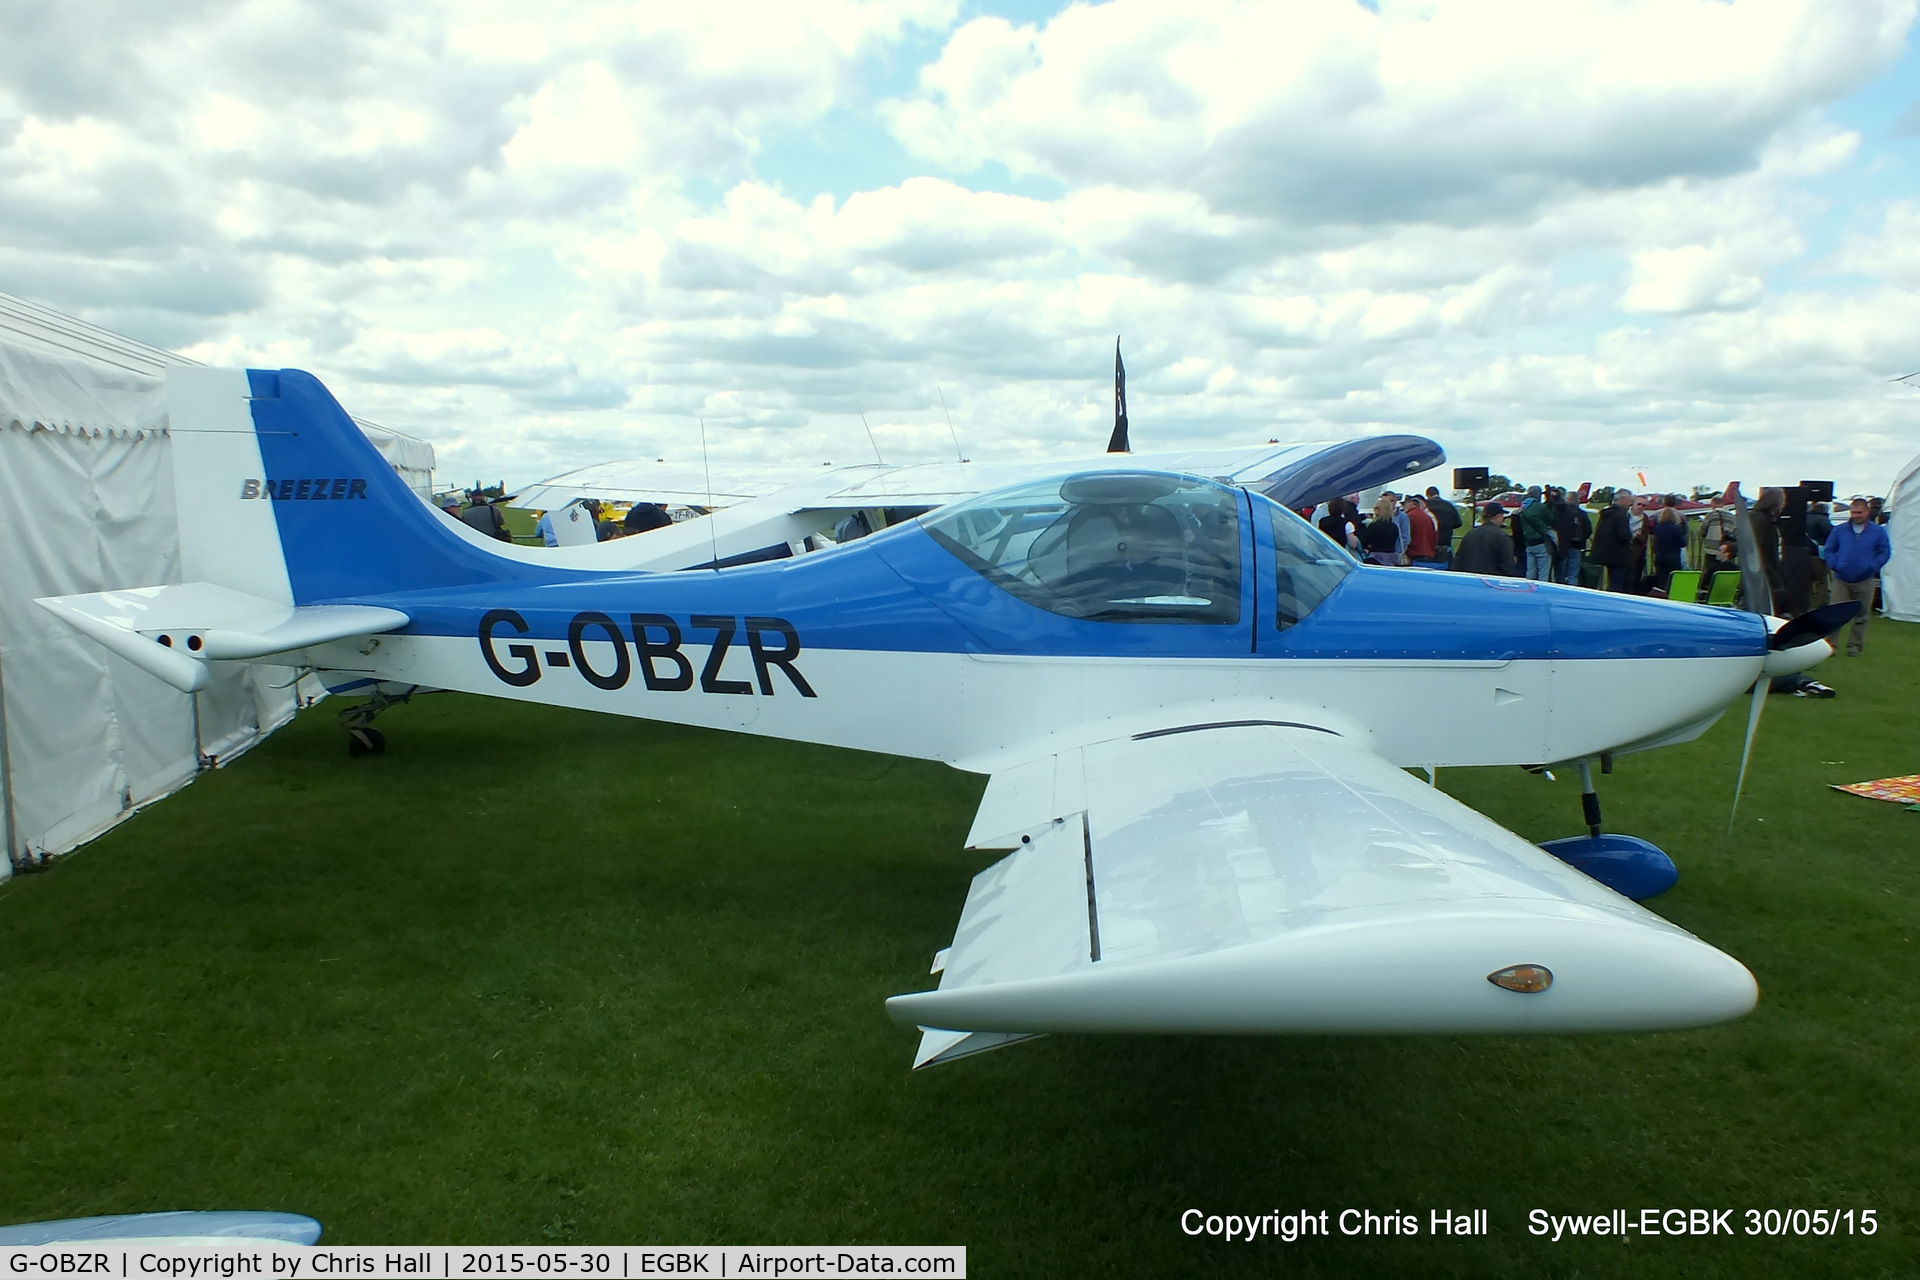 G-OBZR, 2011 Breezer B600 C/N 019LSA, at Aeroexpo 2015